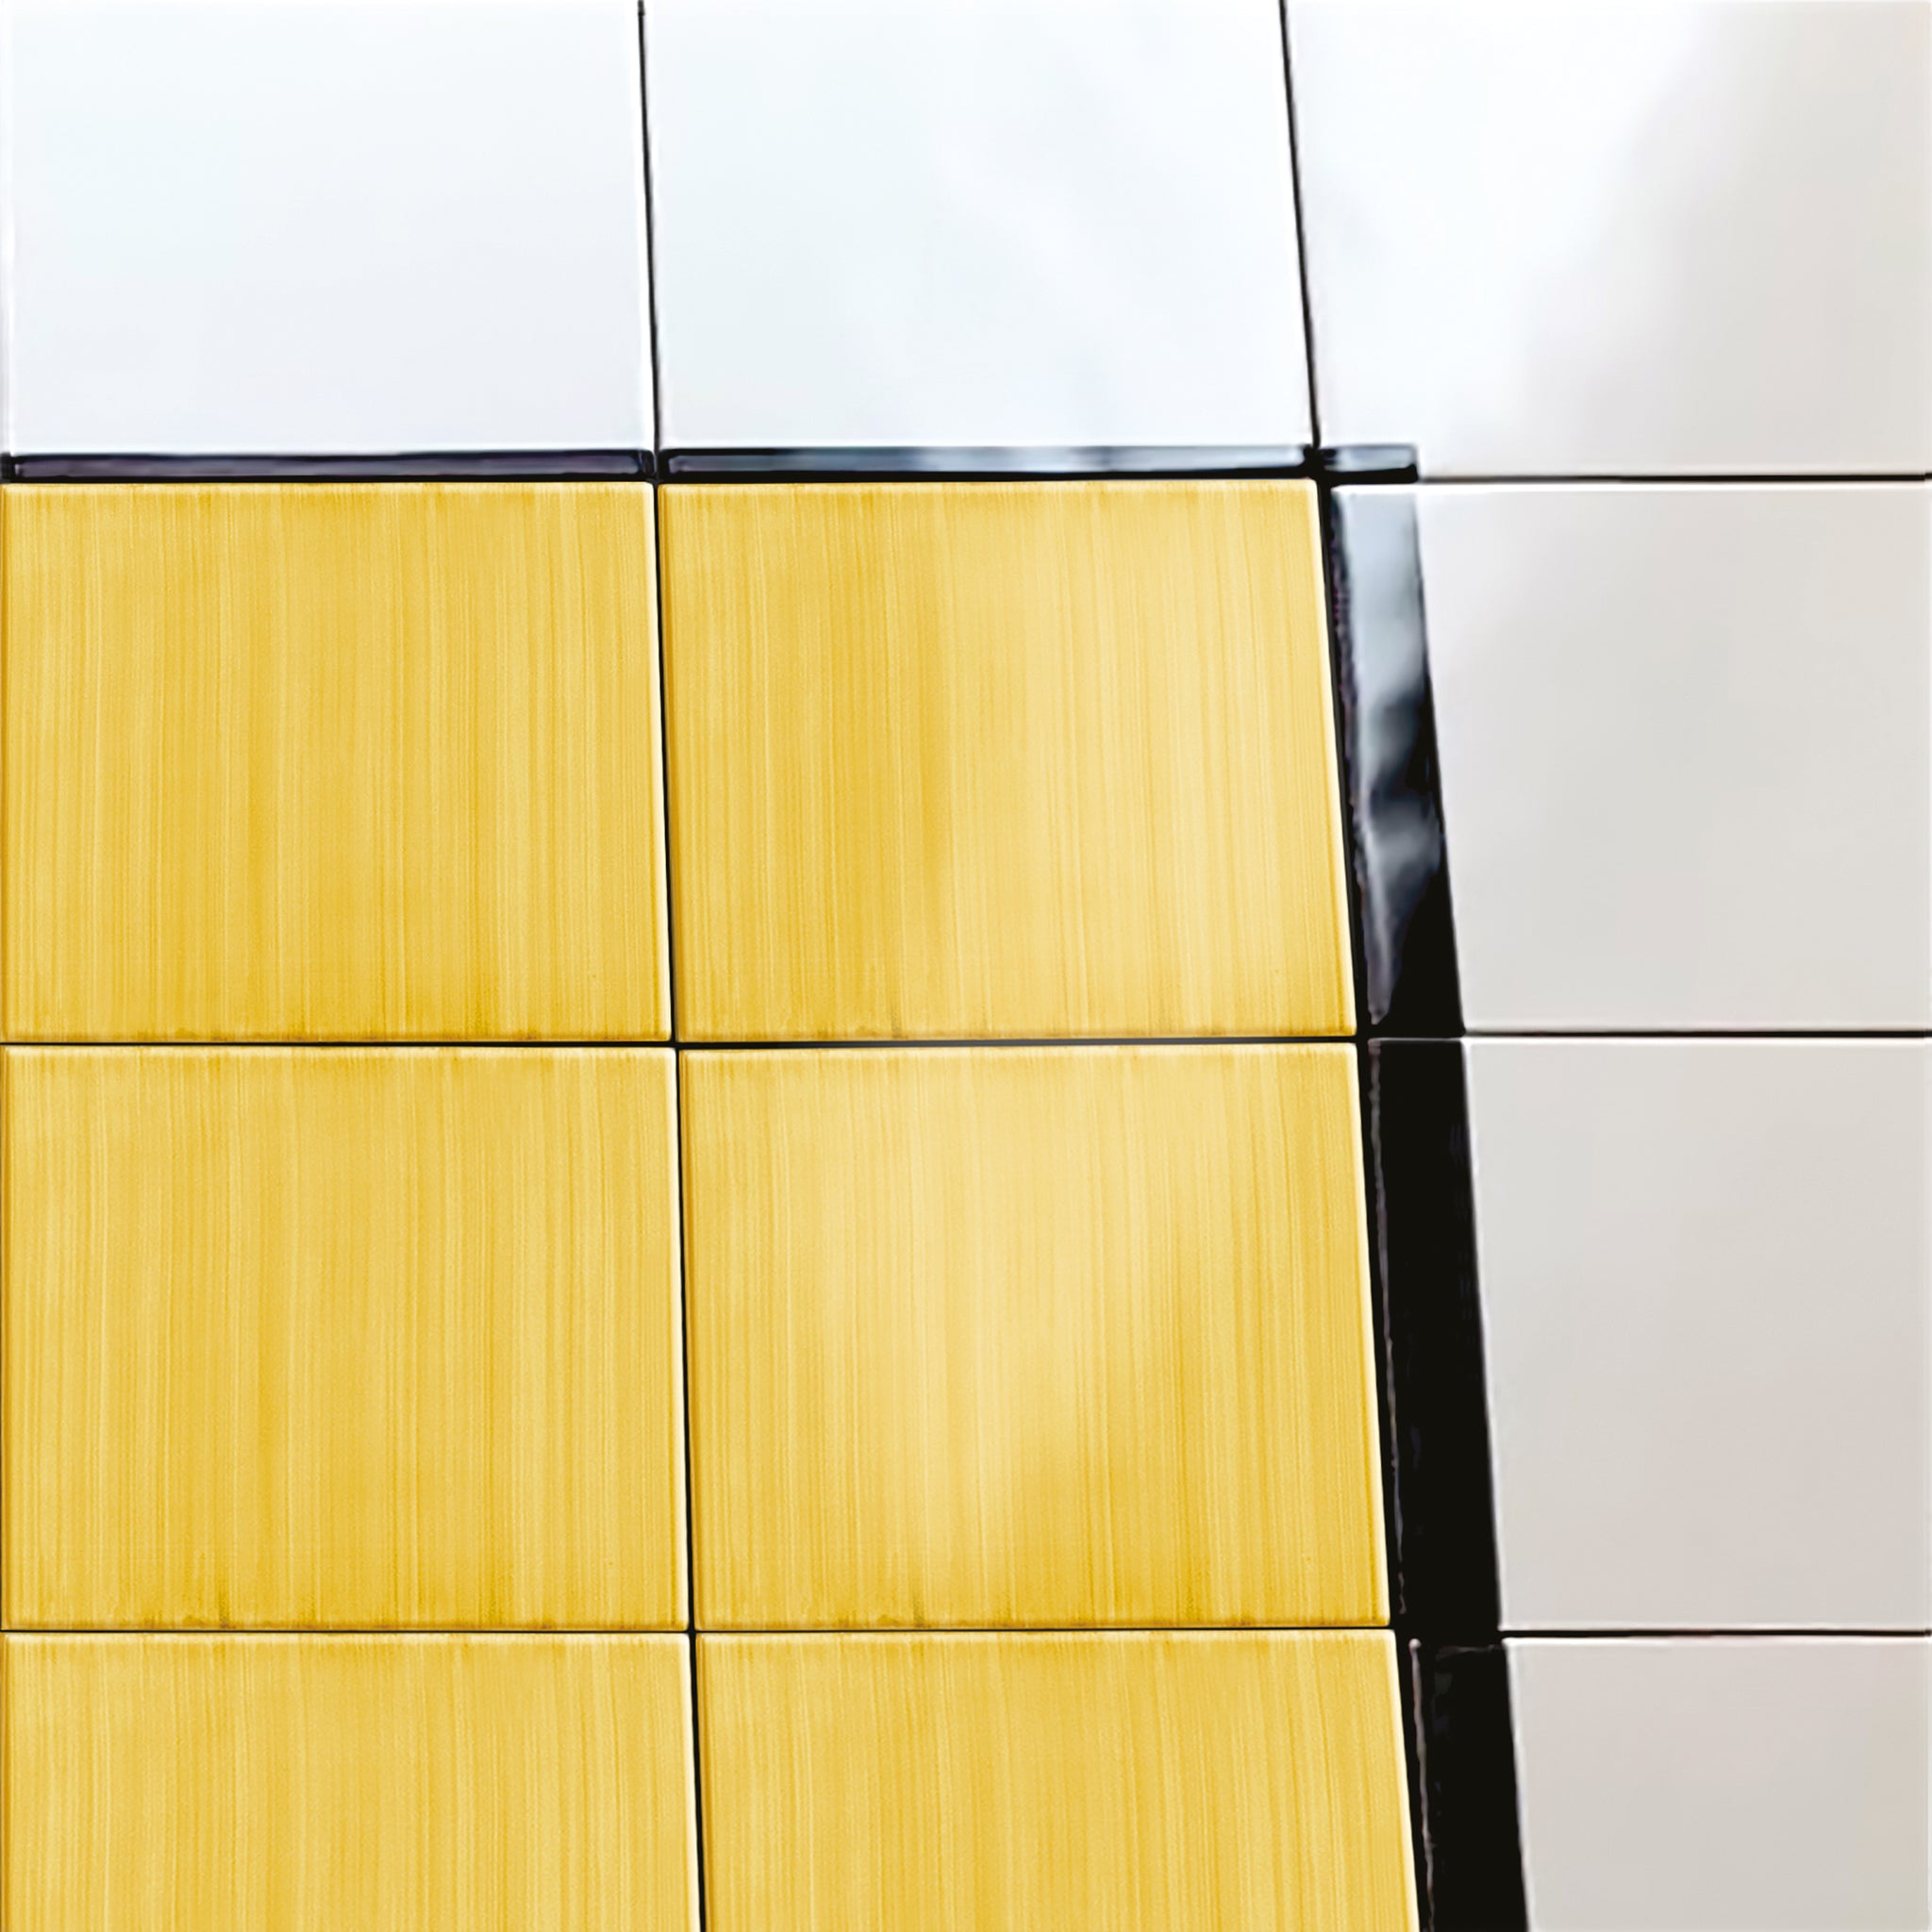 Carpet Total Yellow Ceramic Composition by Giuliano Andrea dell’Uva 120 X 80 with black border - Alternative view 3